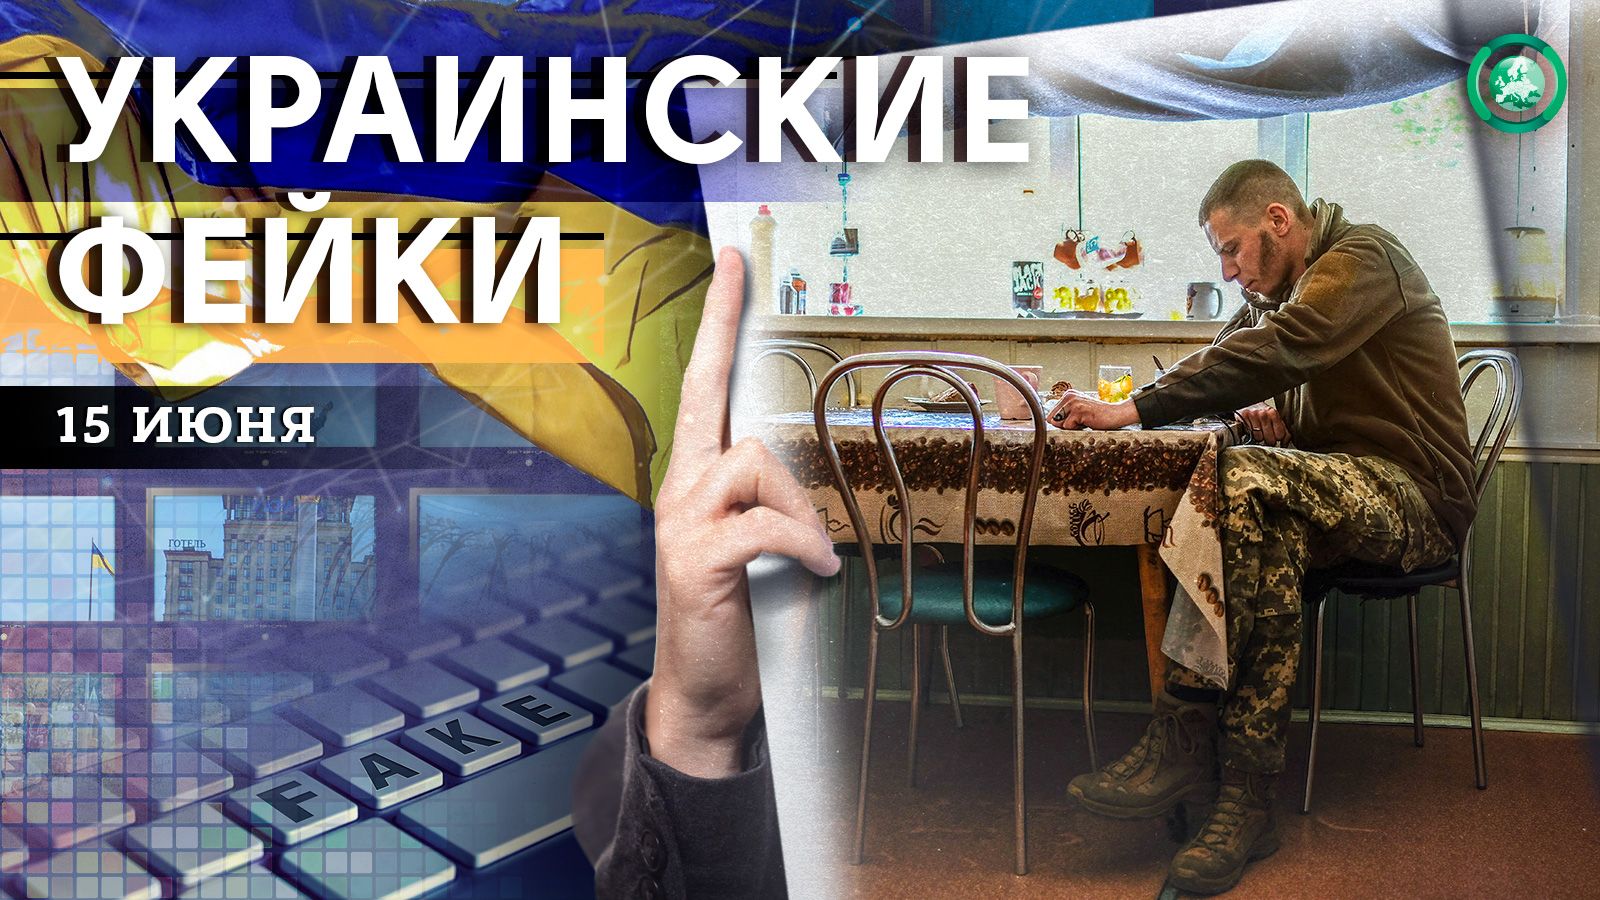 Миллионные премии и выдуманная контузия — какие фейки распространили на Украине 15 июня